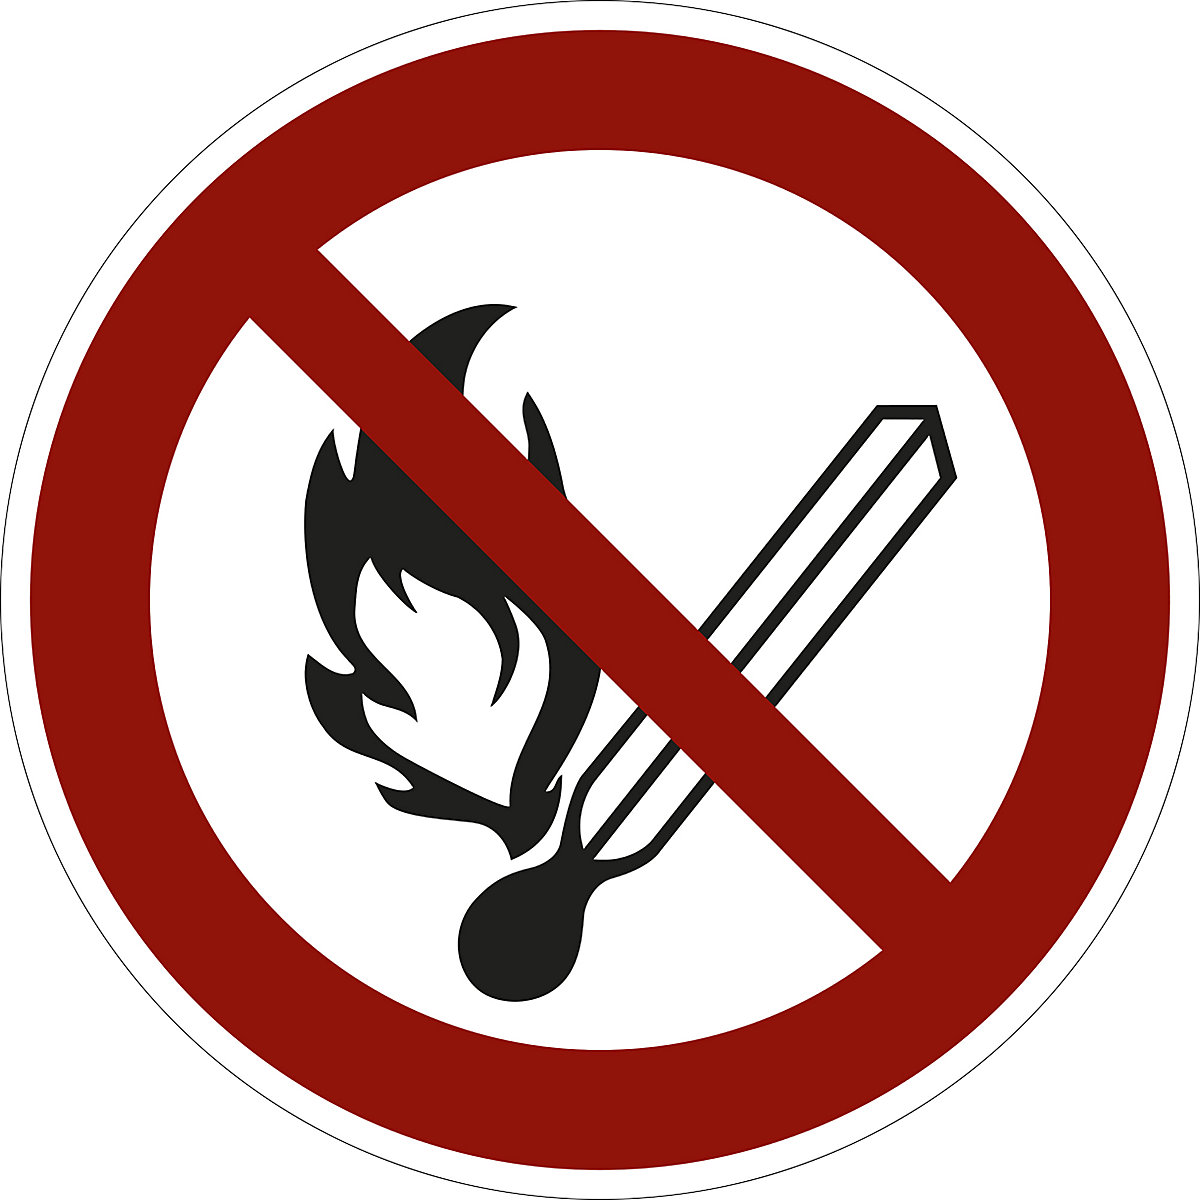 Zákazová značka, Oheň, otevřený plamen a kouření zakázány, bal.j. 10 ks, fólie, Ø 200 mm